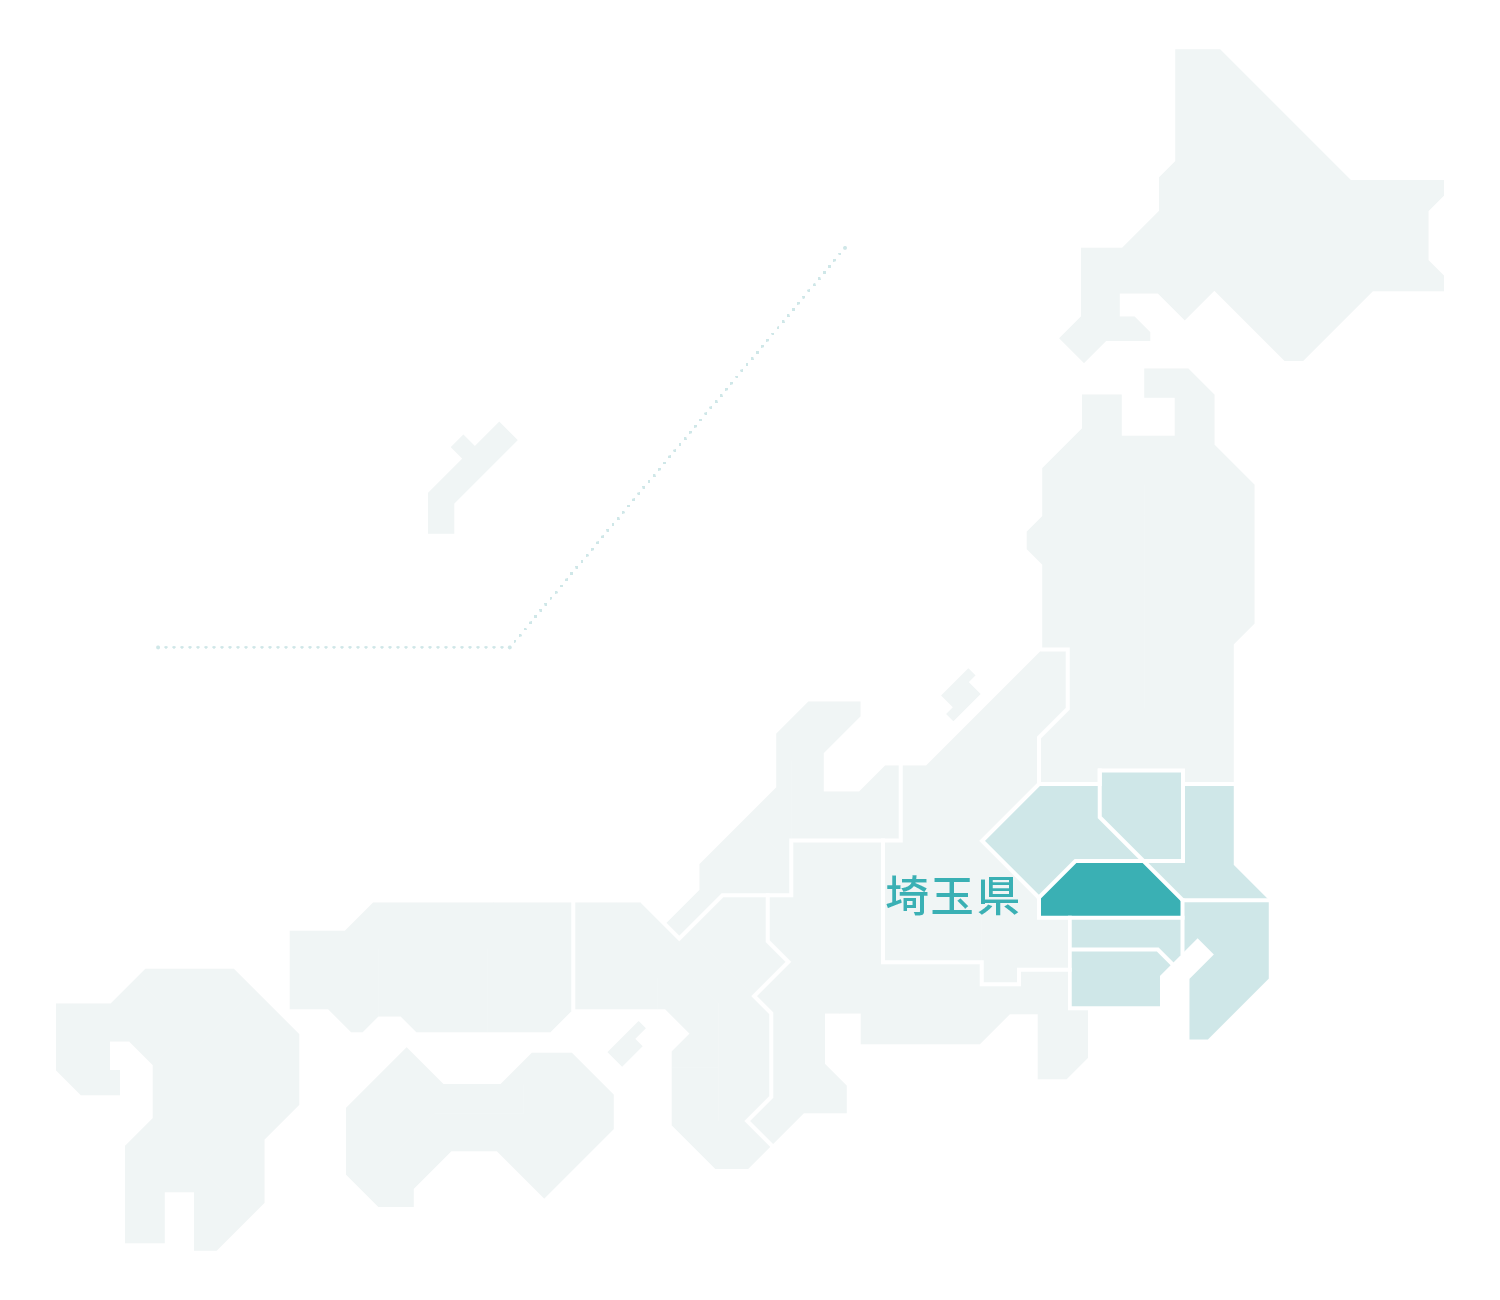 埼玉県マップ